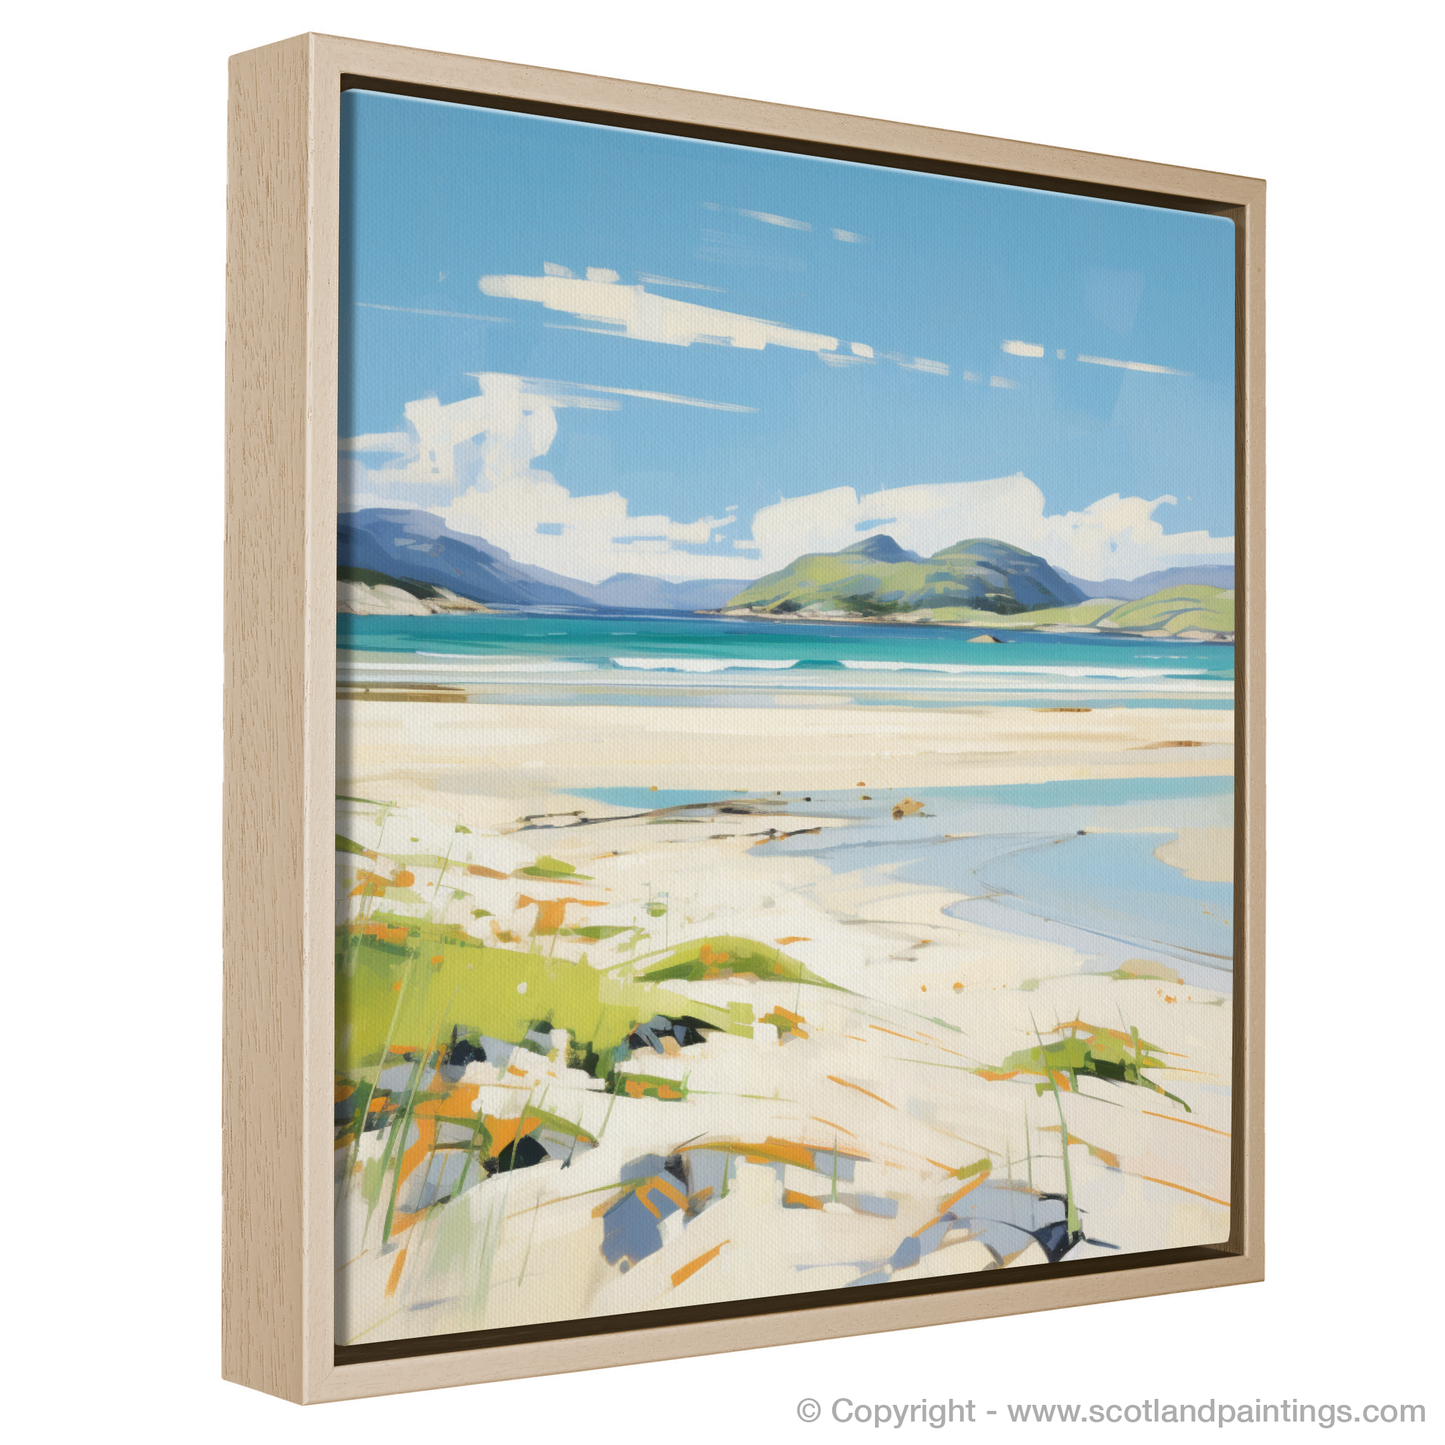 Painting and Art Print of Luskentyre Beach, Isle of Harris in summer entitled "Luskentyre Beach Summer Reverie".